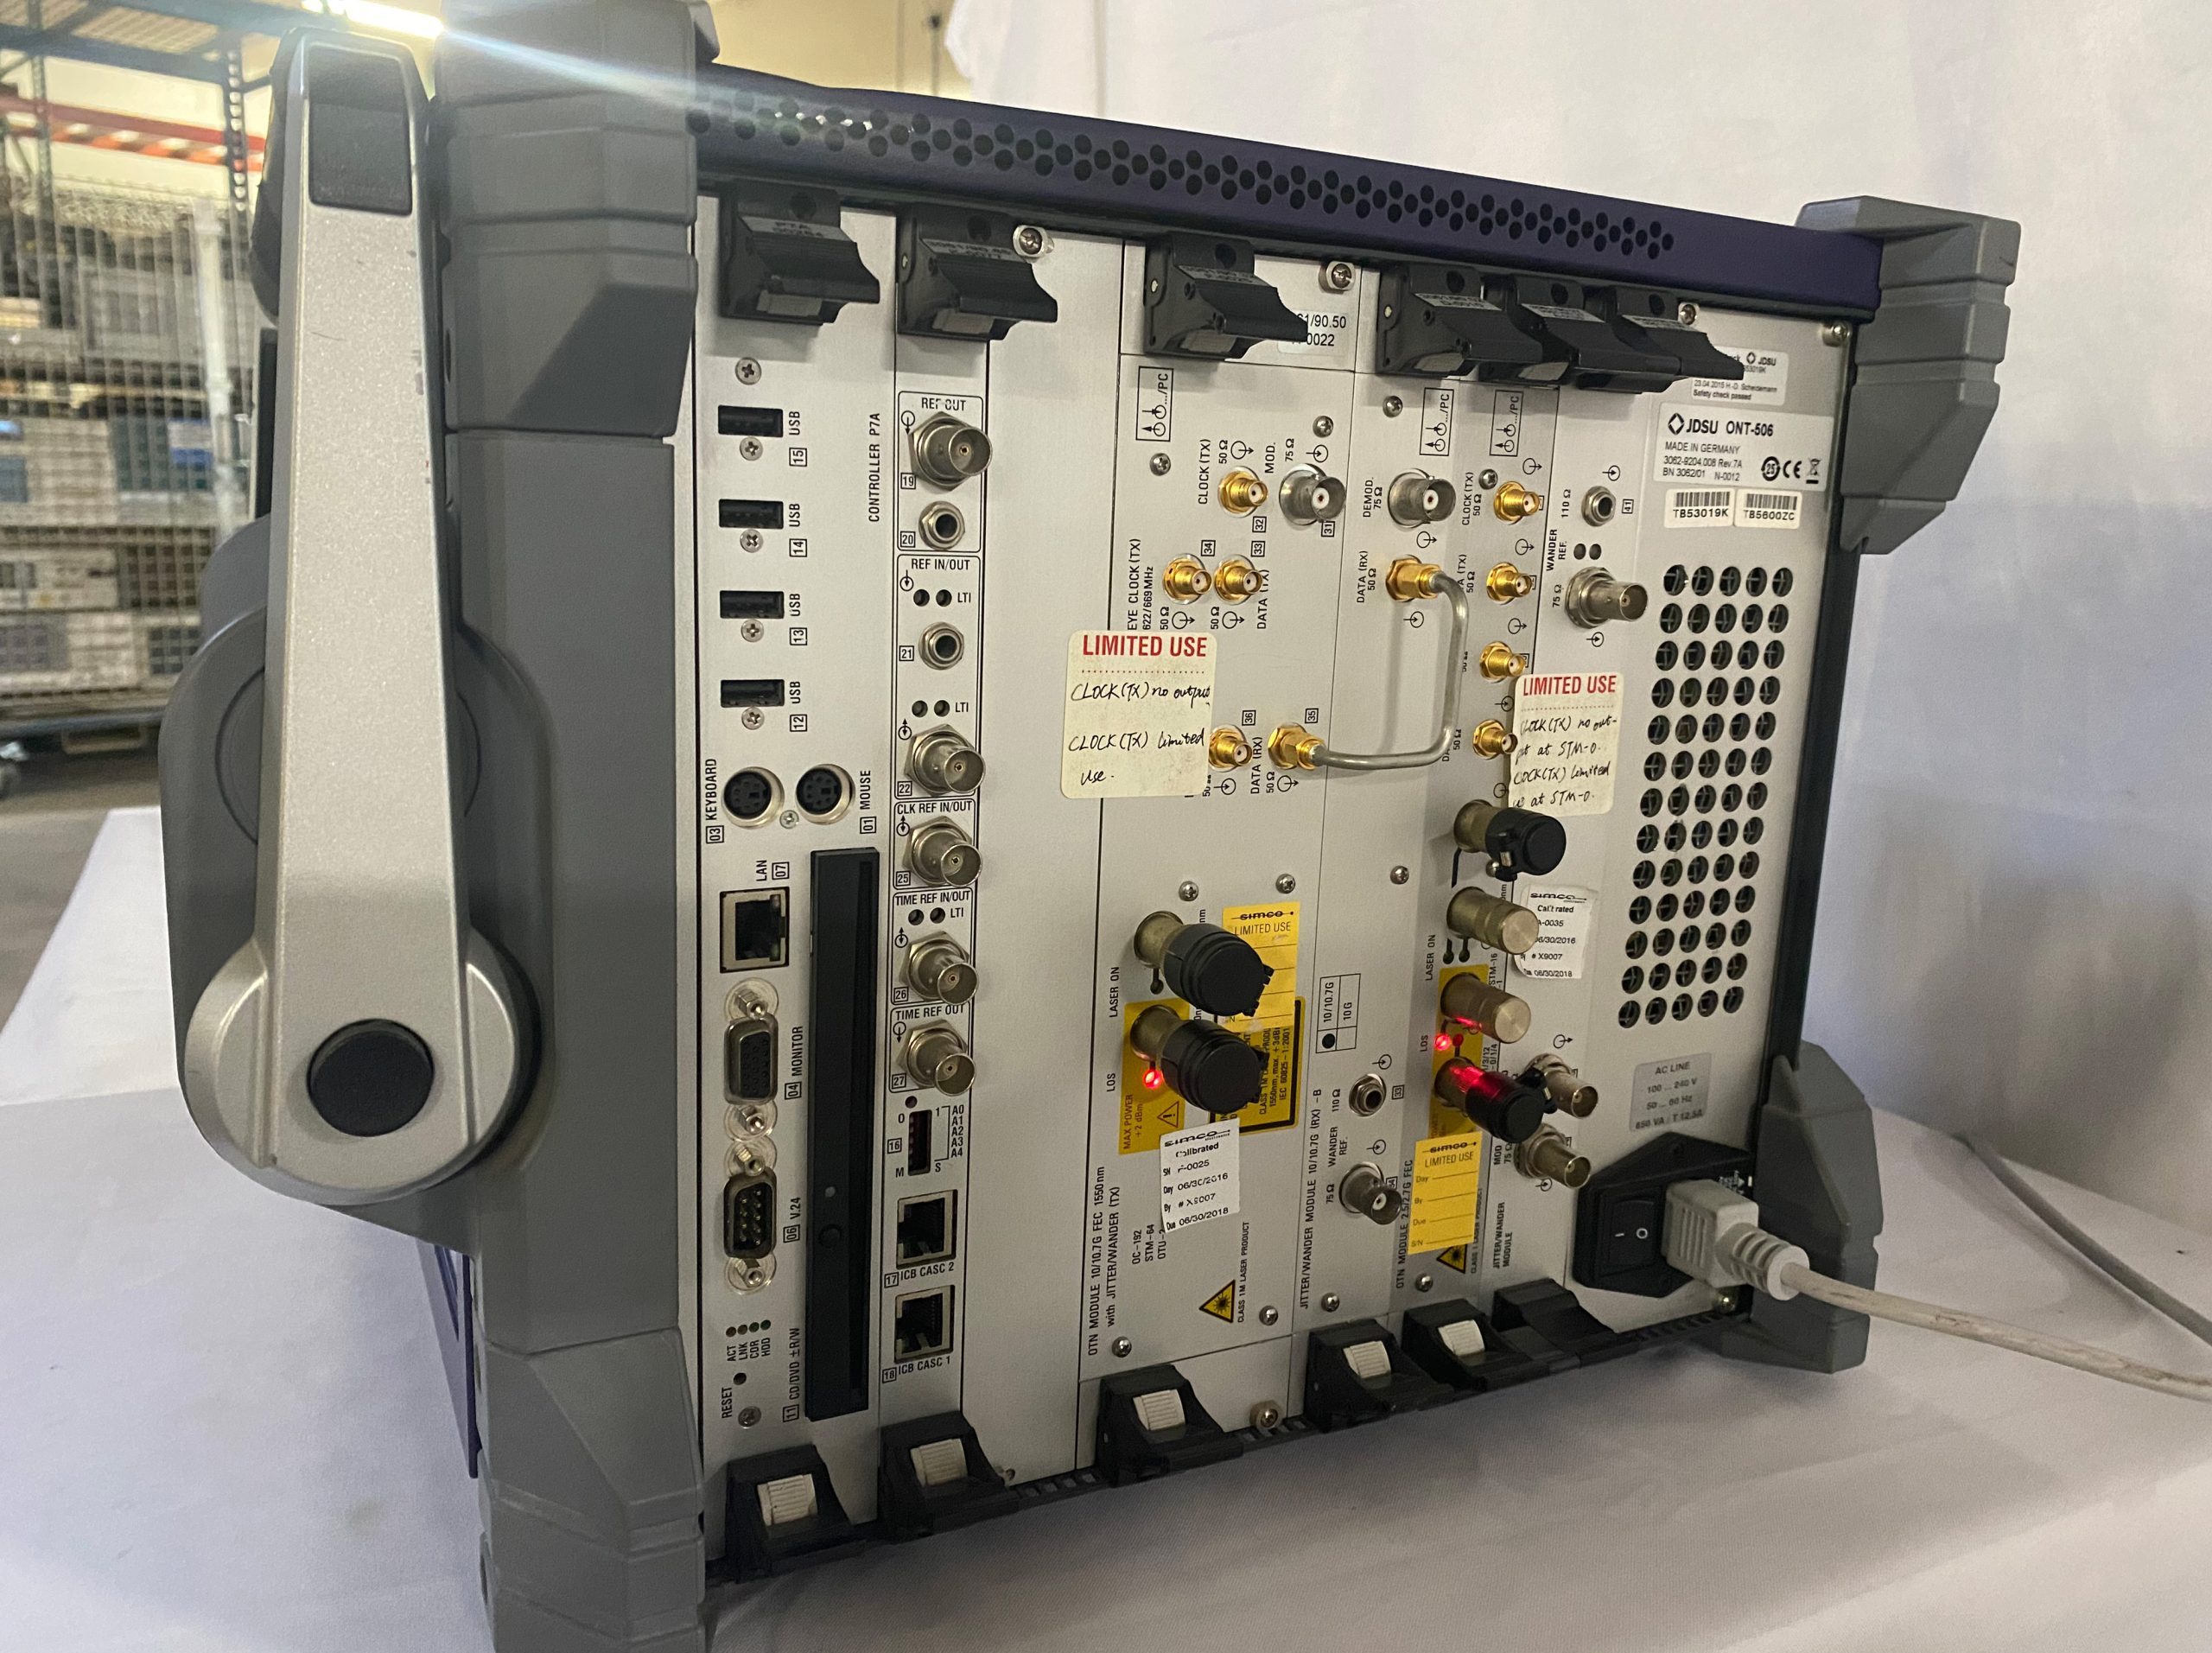 JDSU  ONT 506  Optical Network Tester  65403 Refurbished